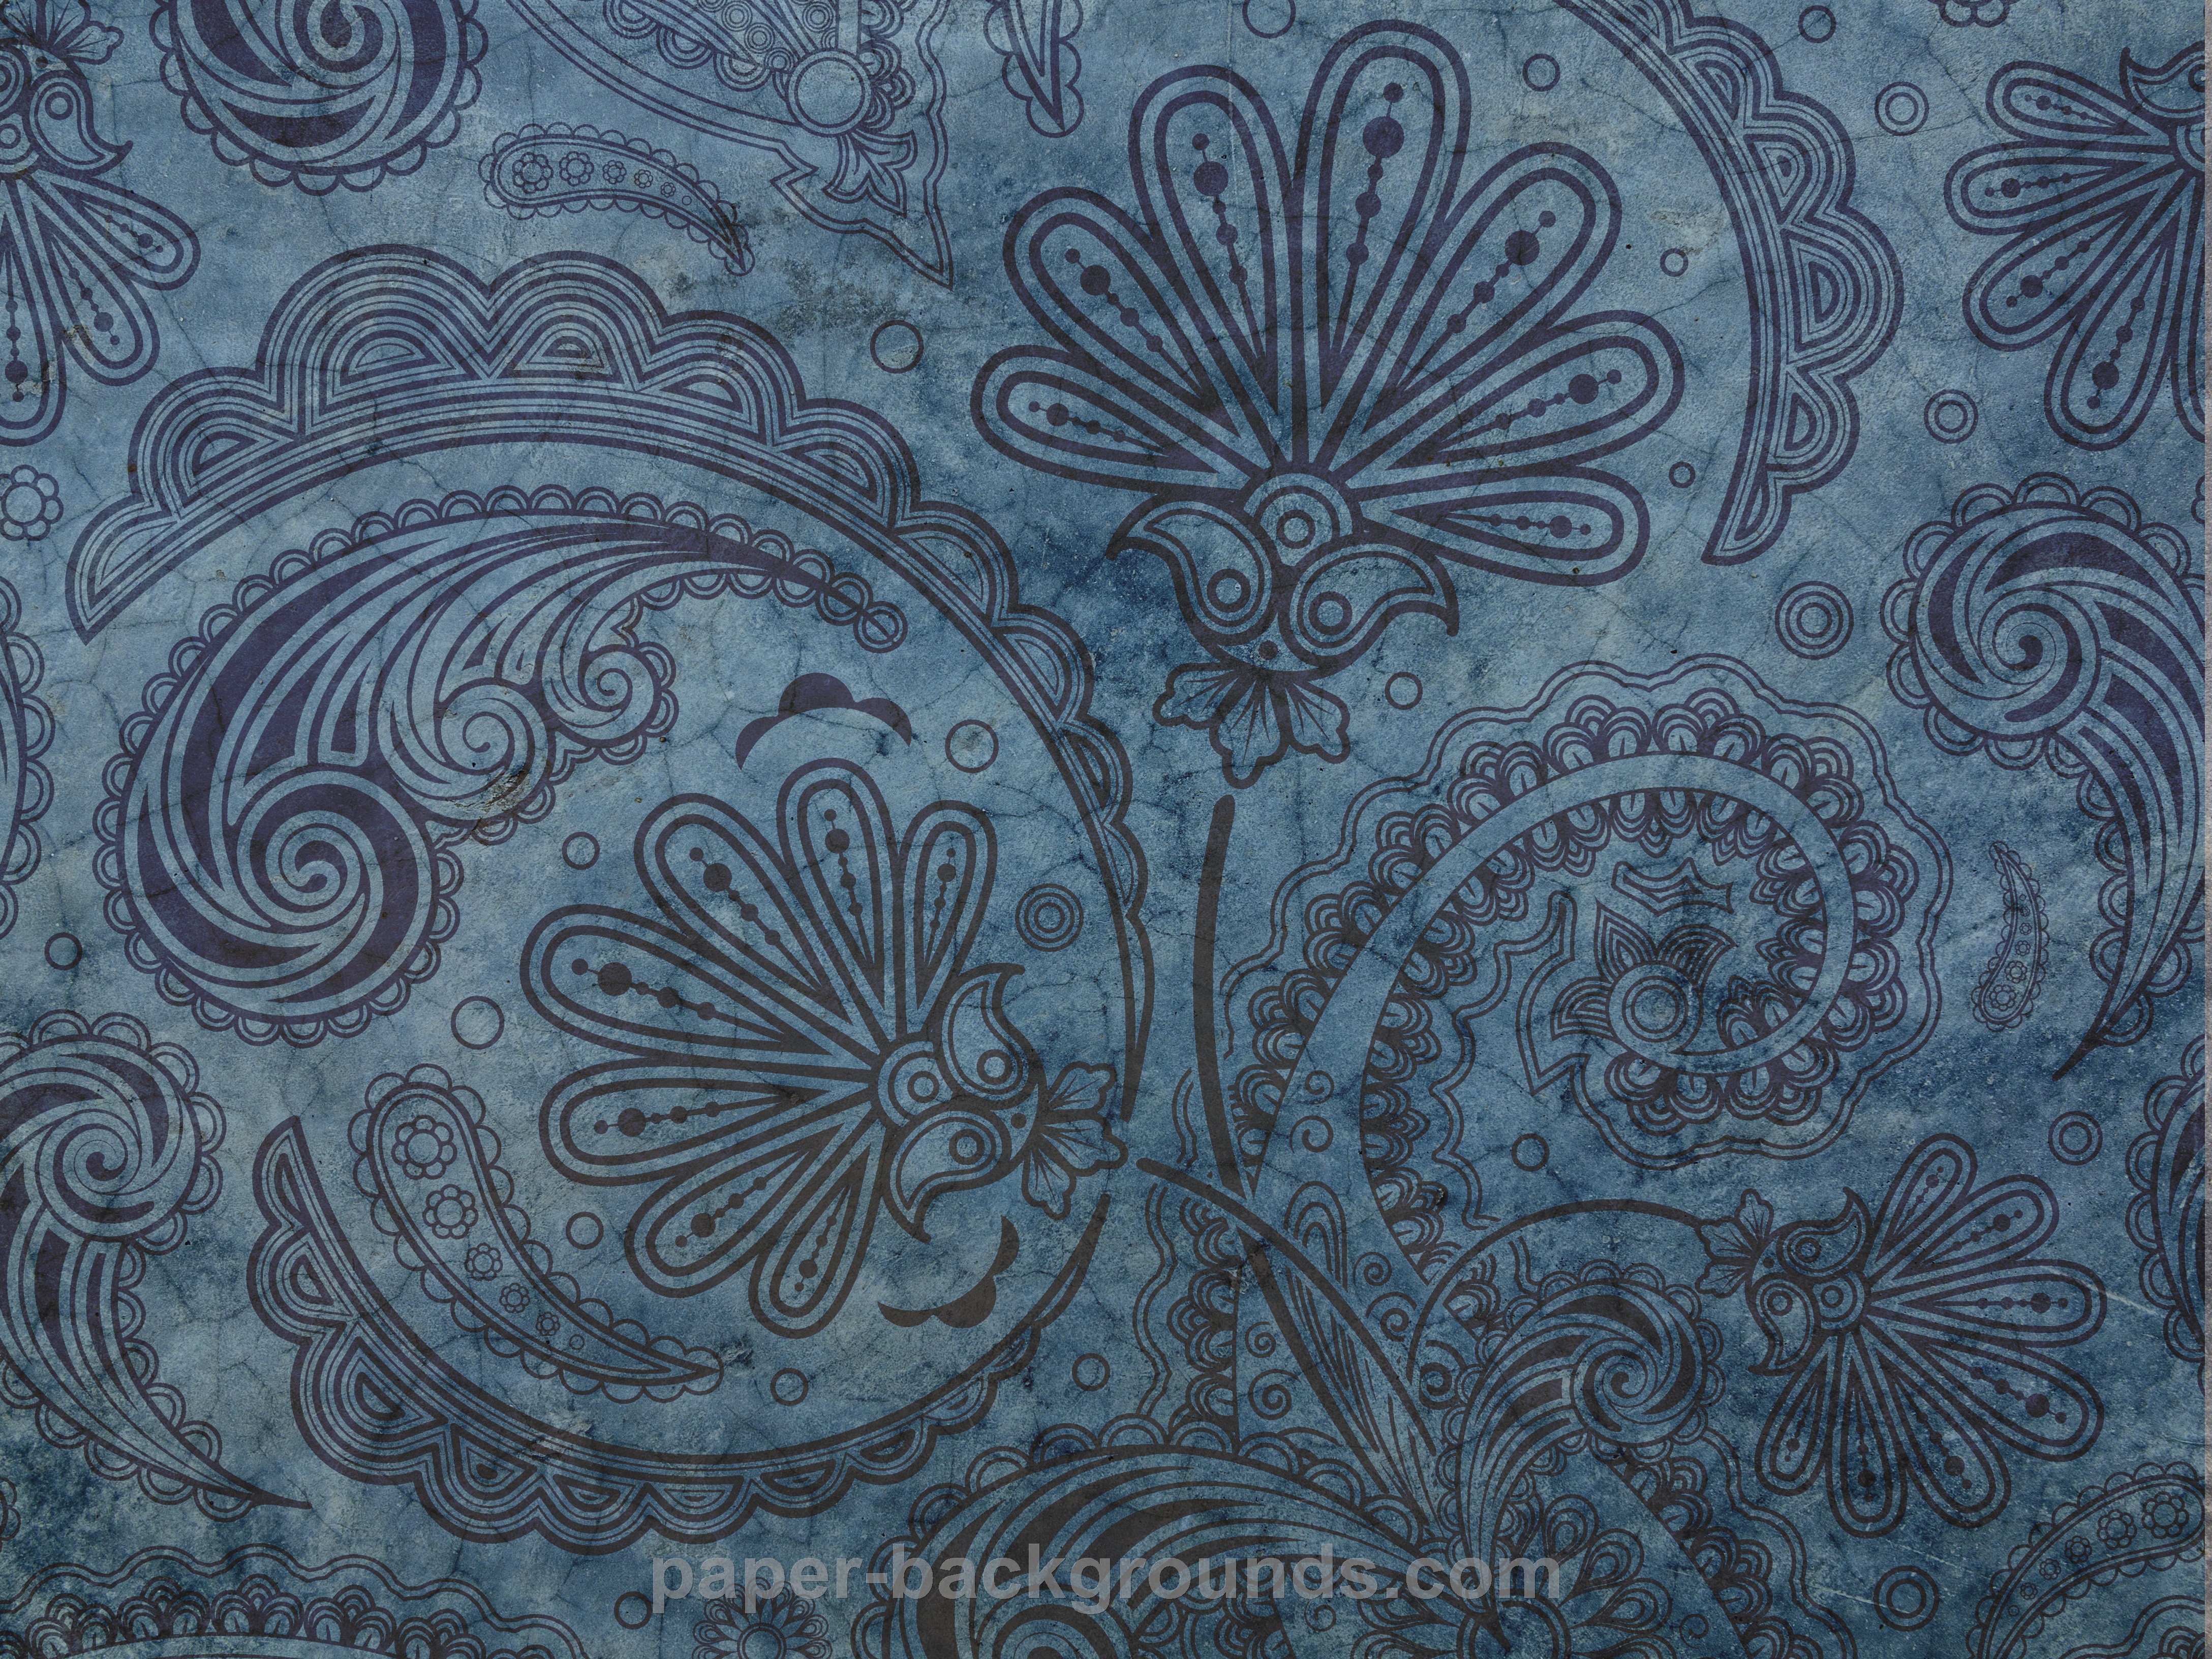 Paper Backgrounds vintage indigo pattern background